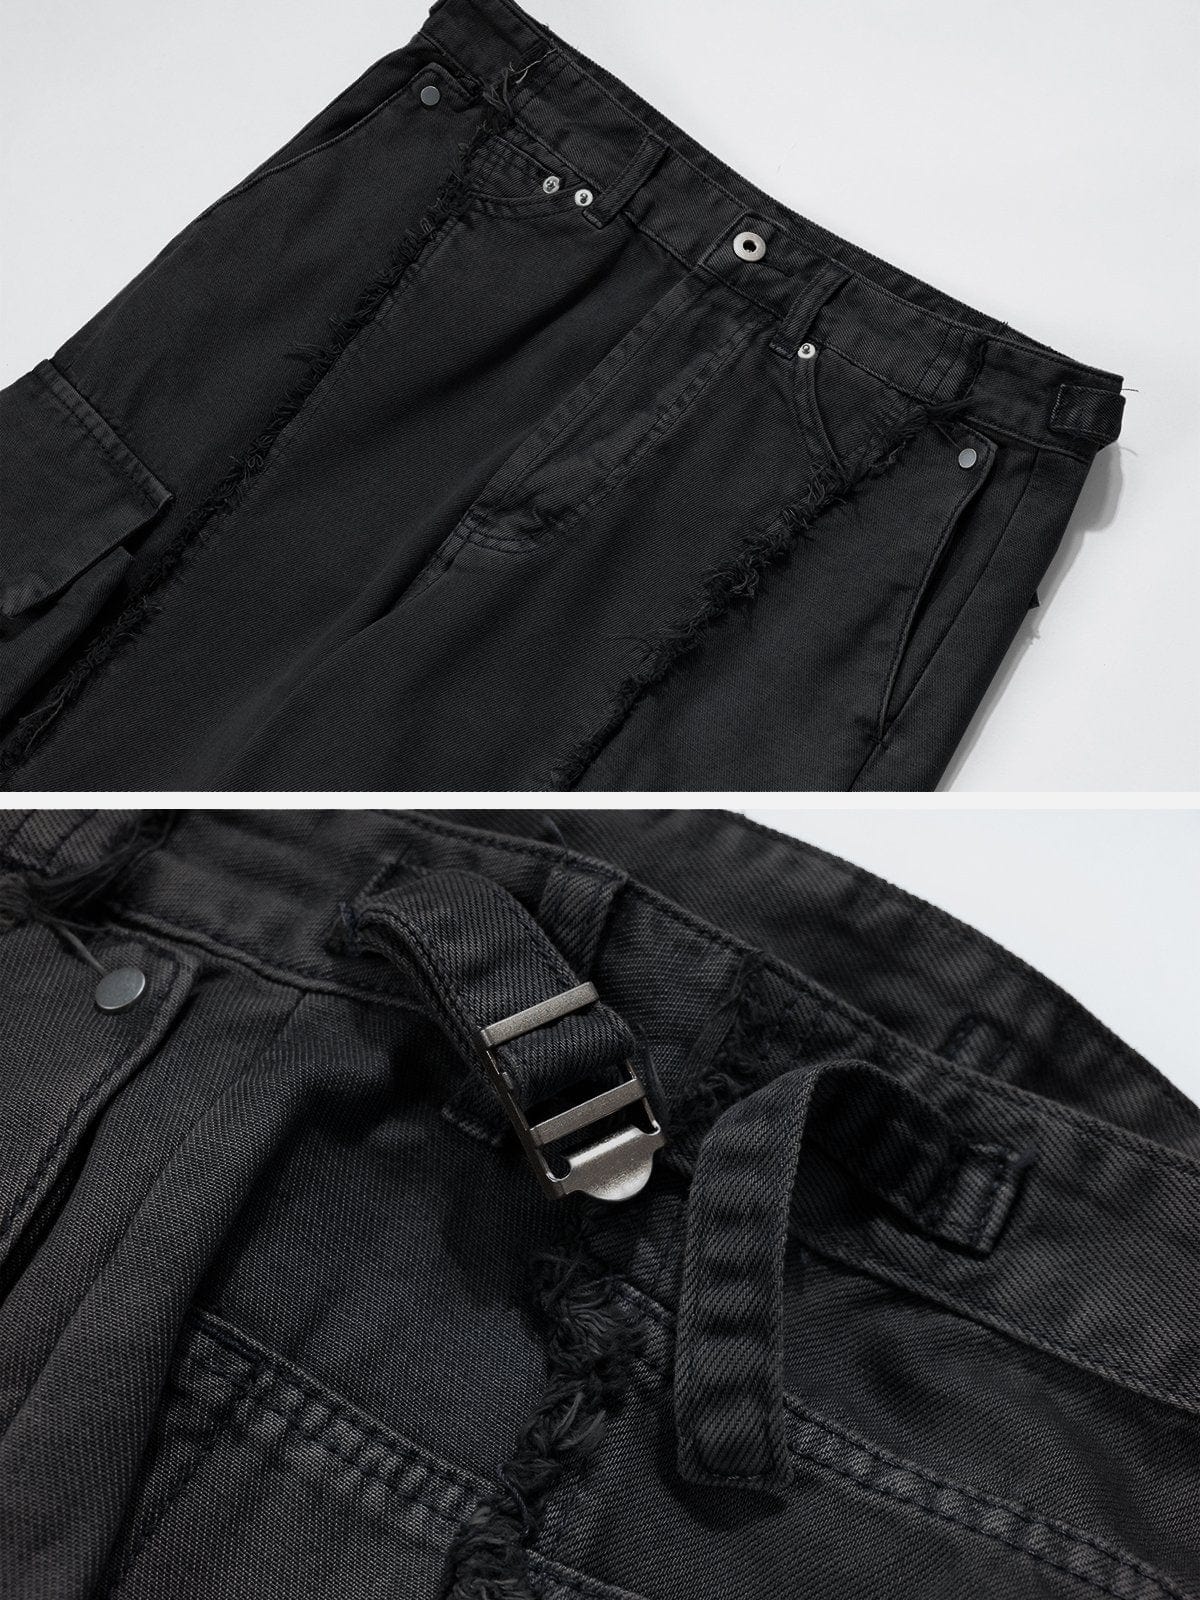 NEV Fringe Multiple Pockets Jeans